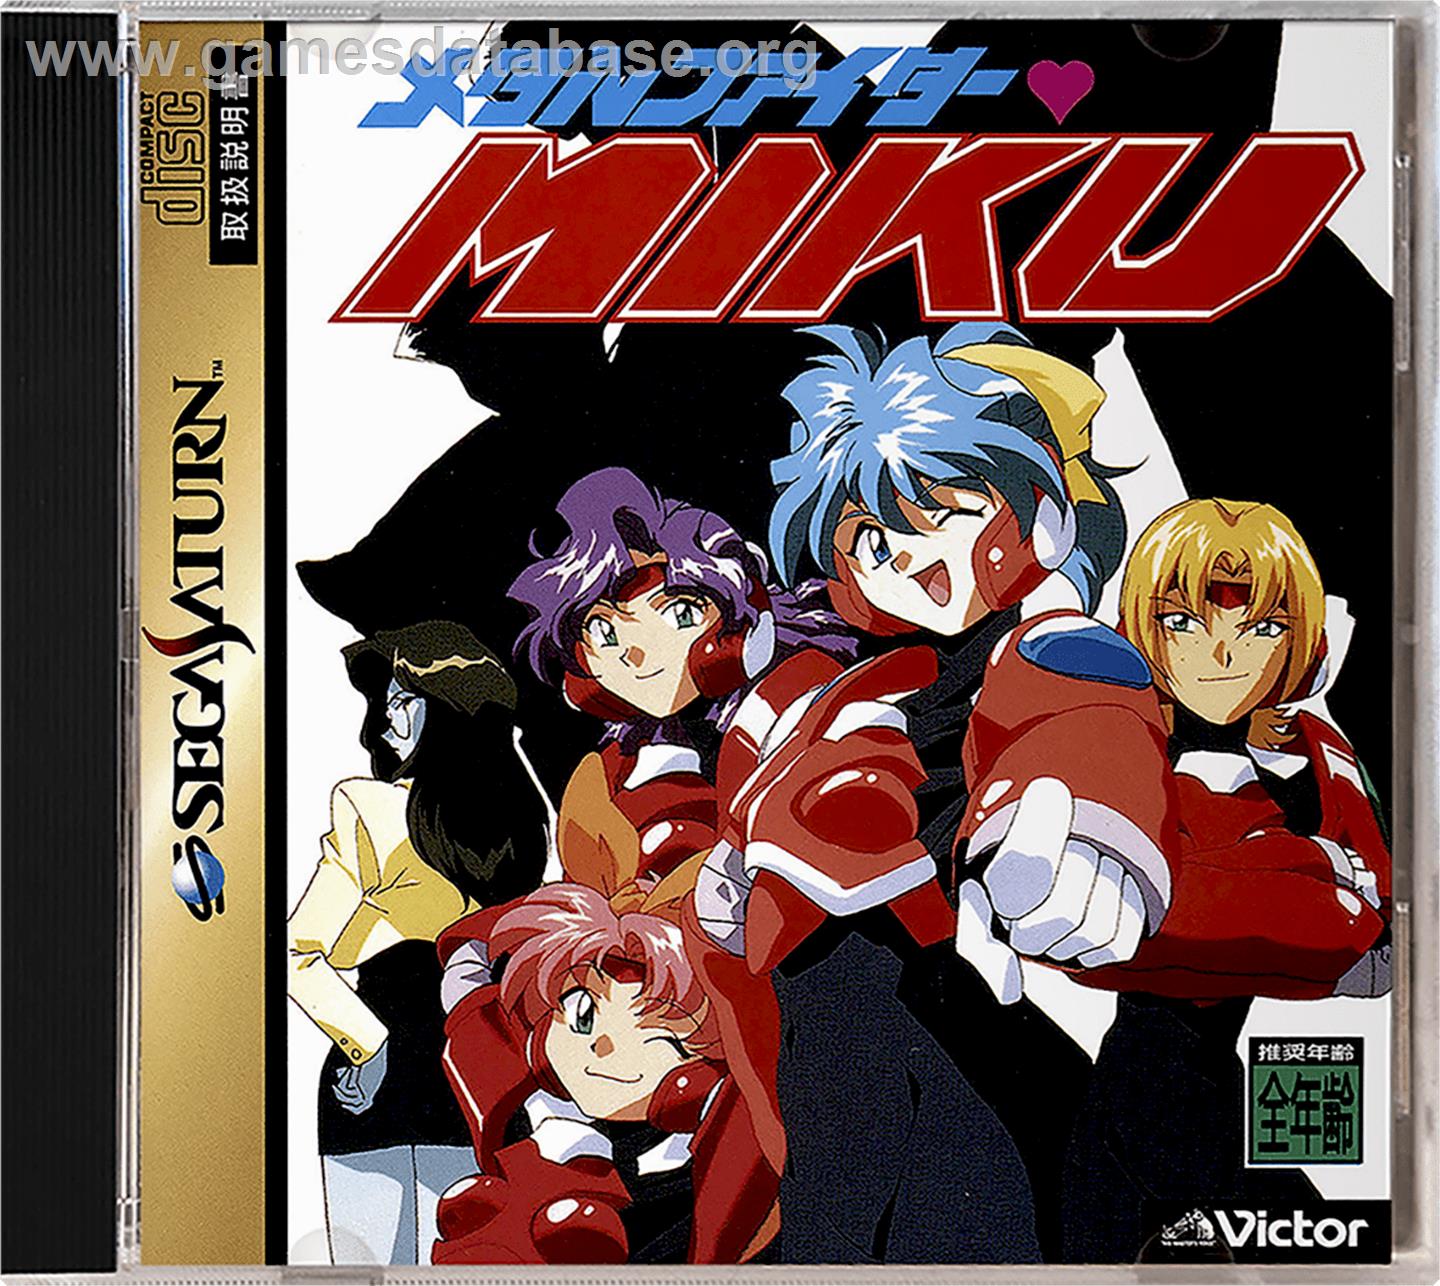 Metal Fighter Miku - Sega Saturn - Artwork - Box